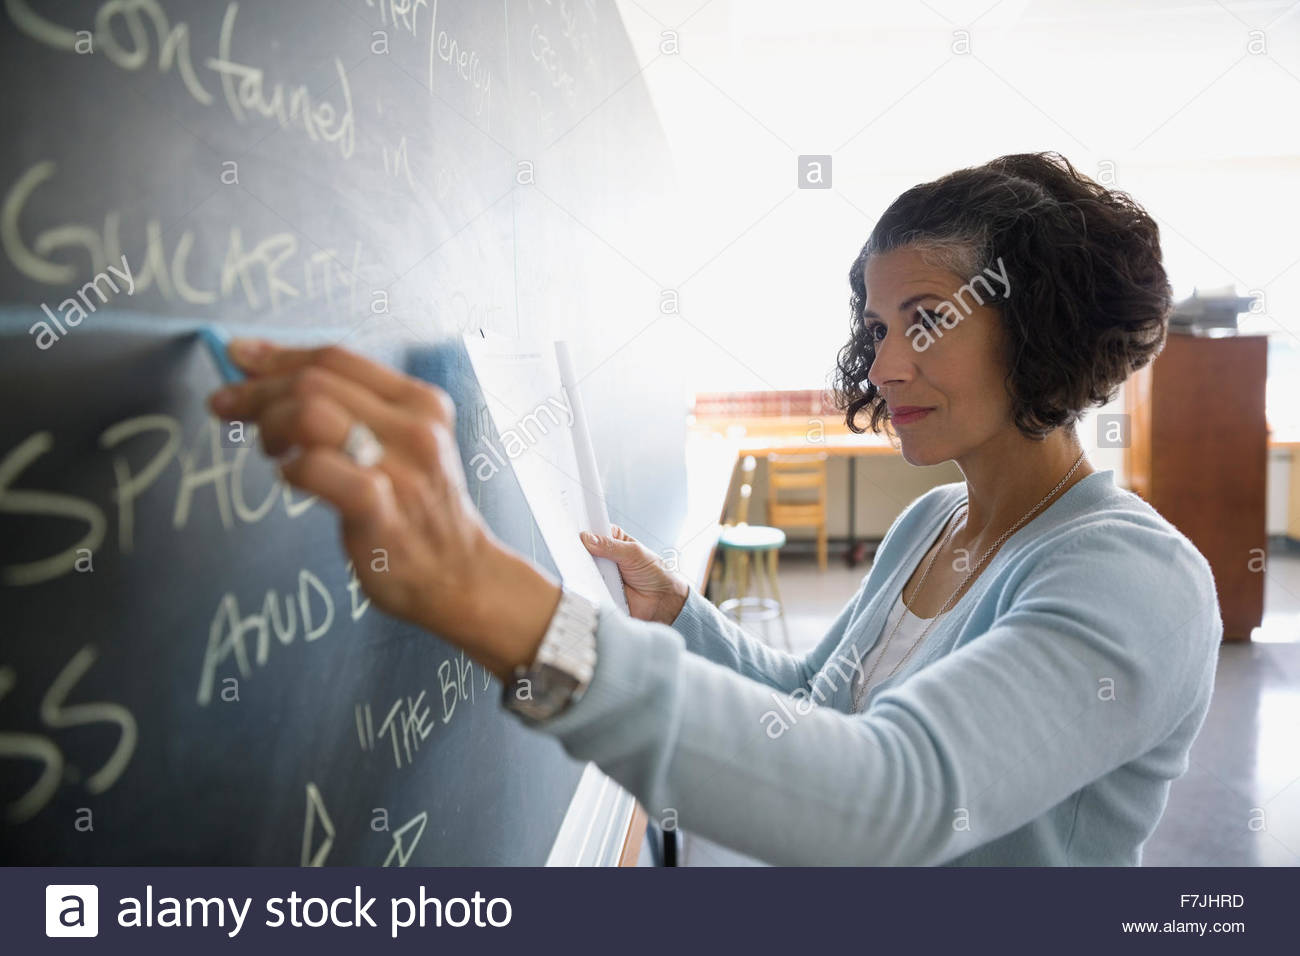 Teacher writing on blackboard in classroom Stock Photo